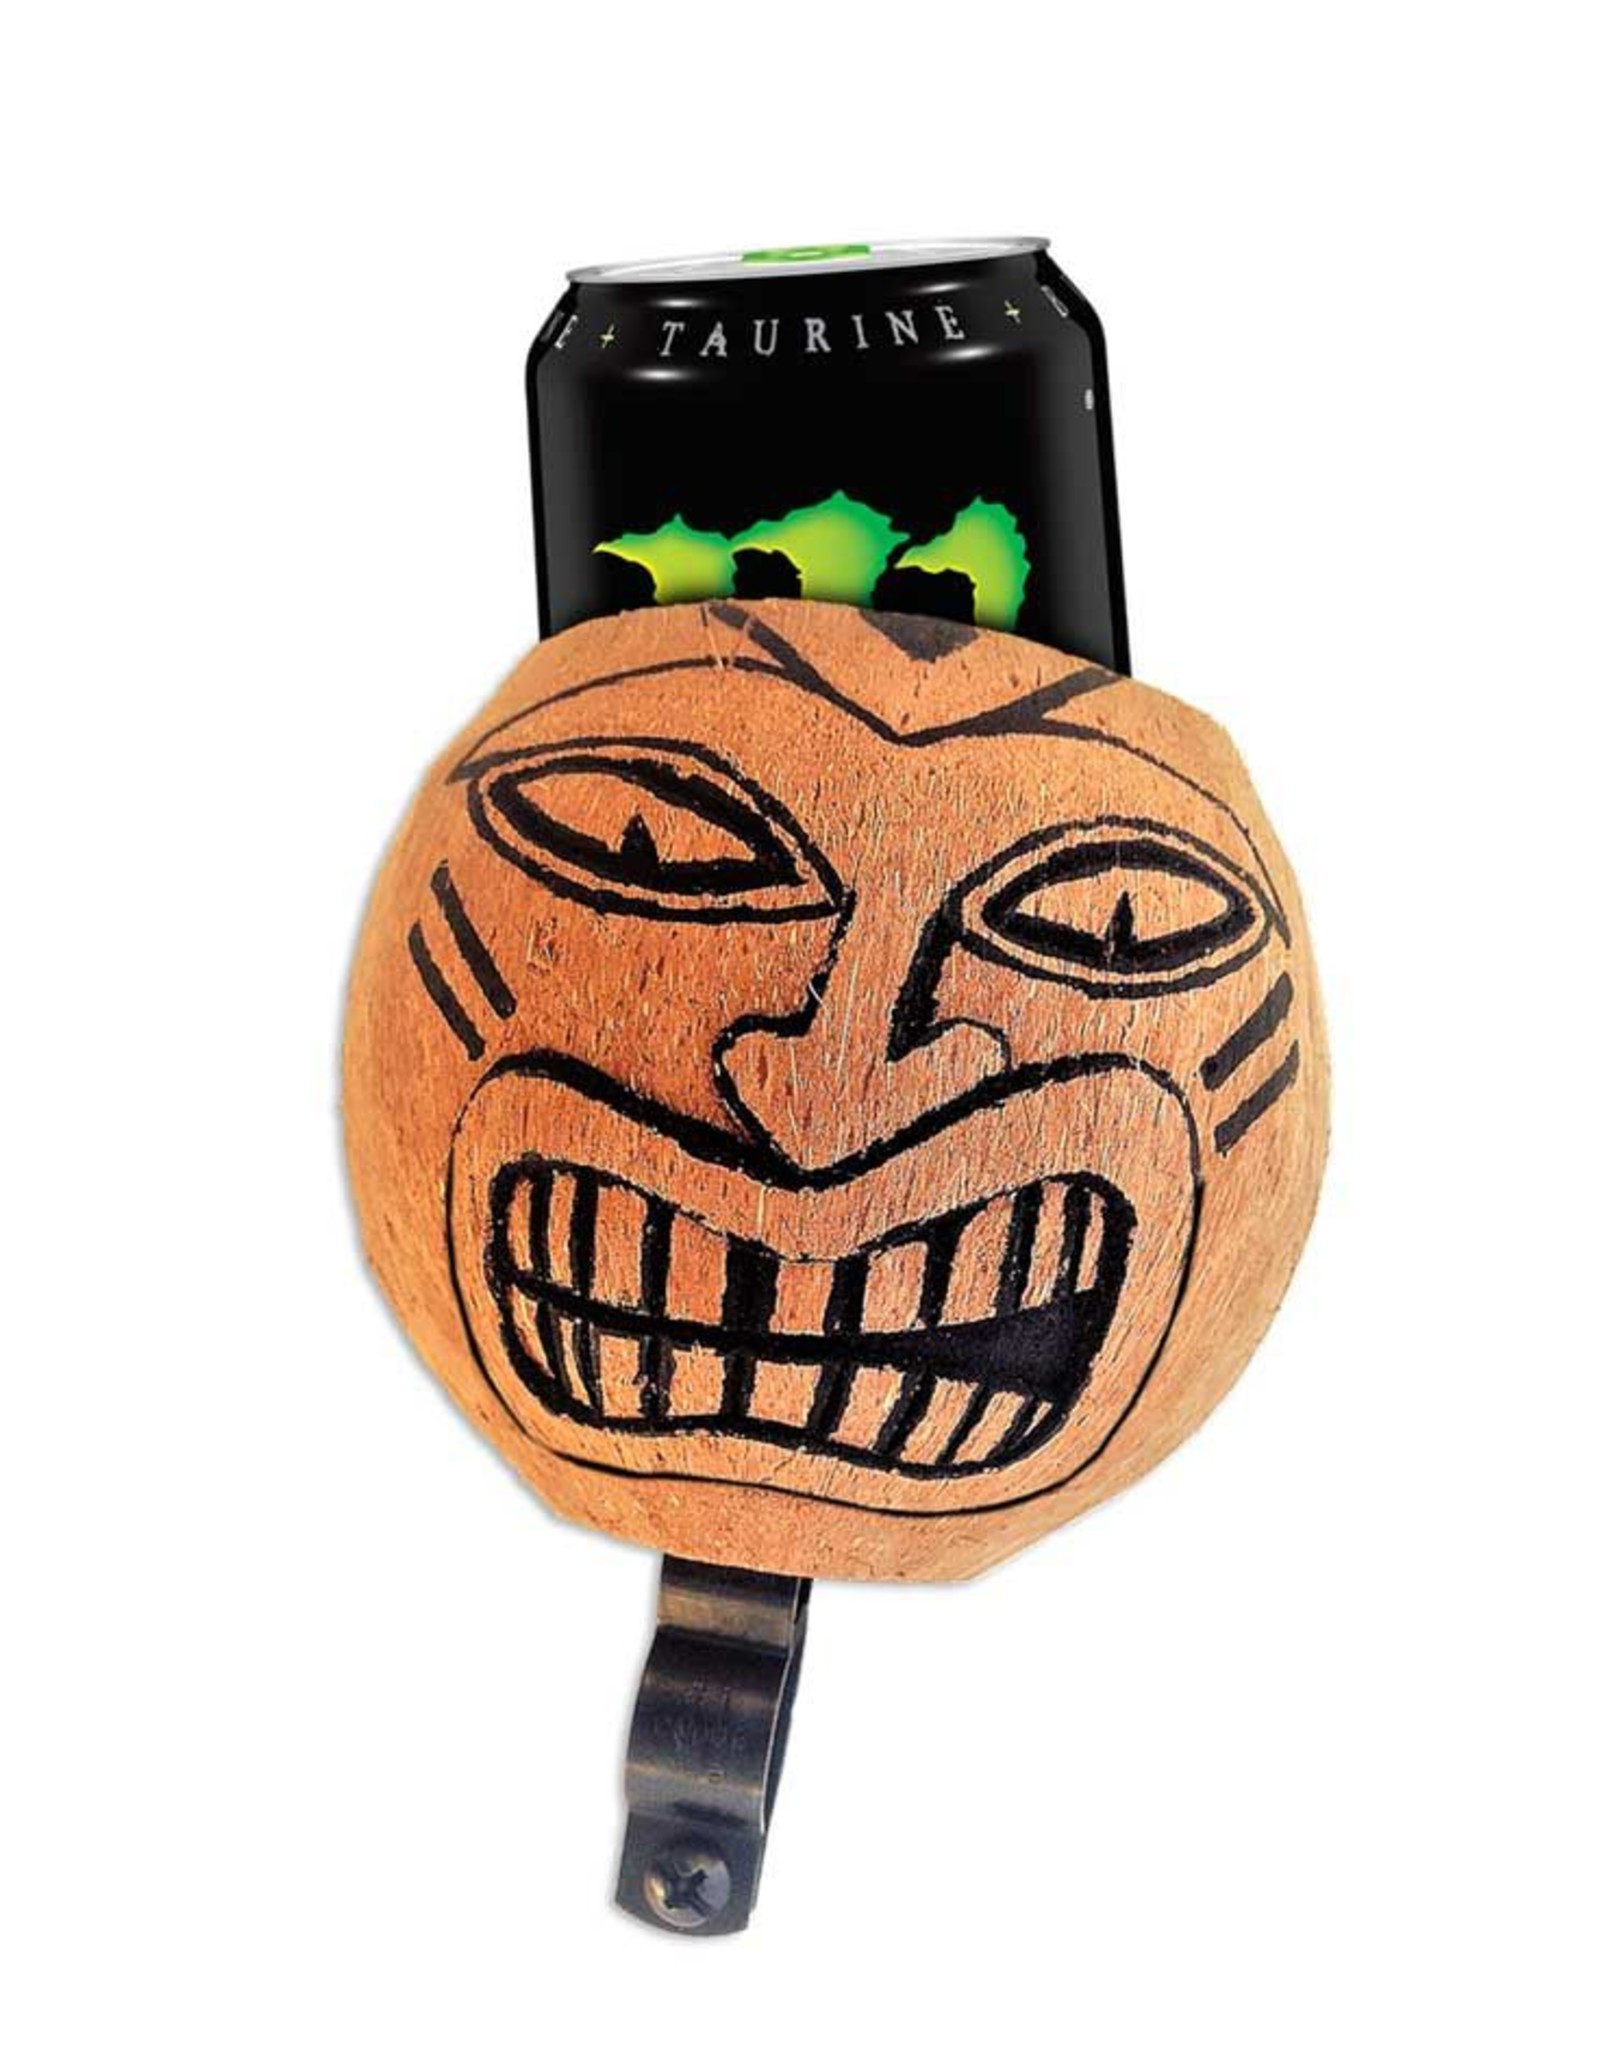 coconut bike drink holder